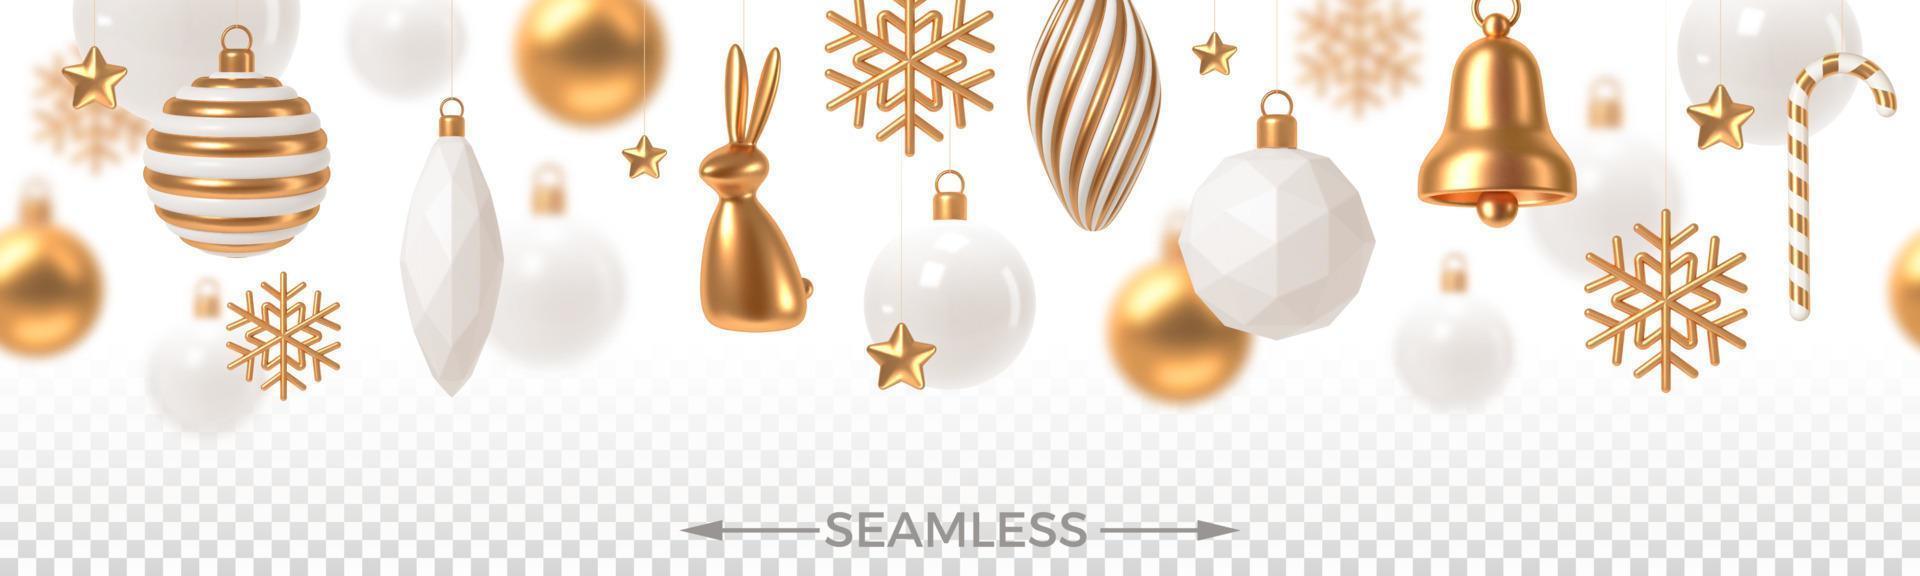 Natale bianca e oro palline e decorazione. senza soluzione di continuità sfondo. 3d rendere vettore illustrazione.